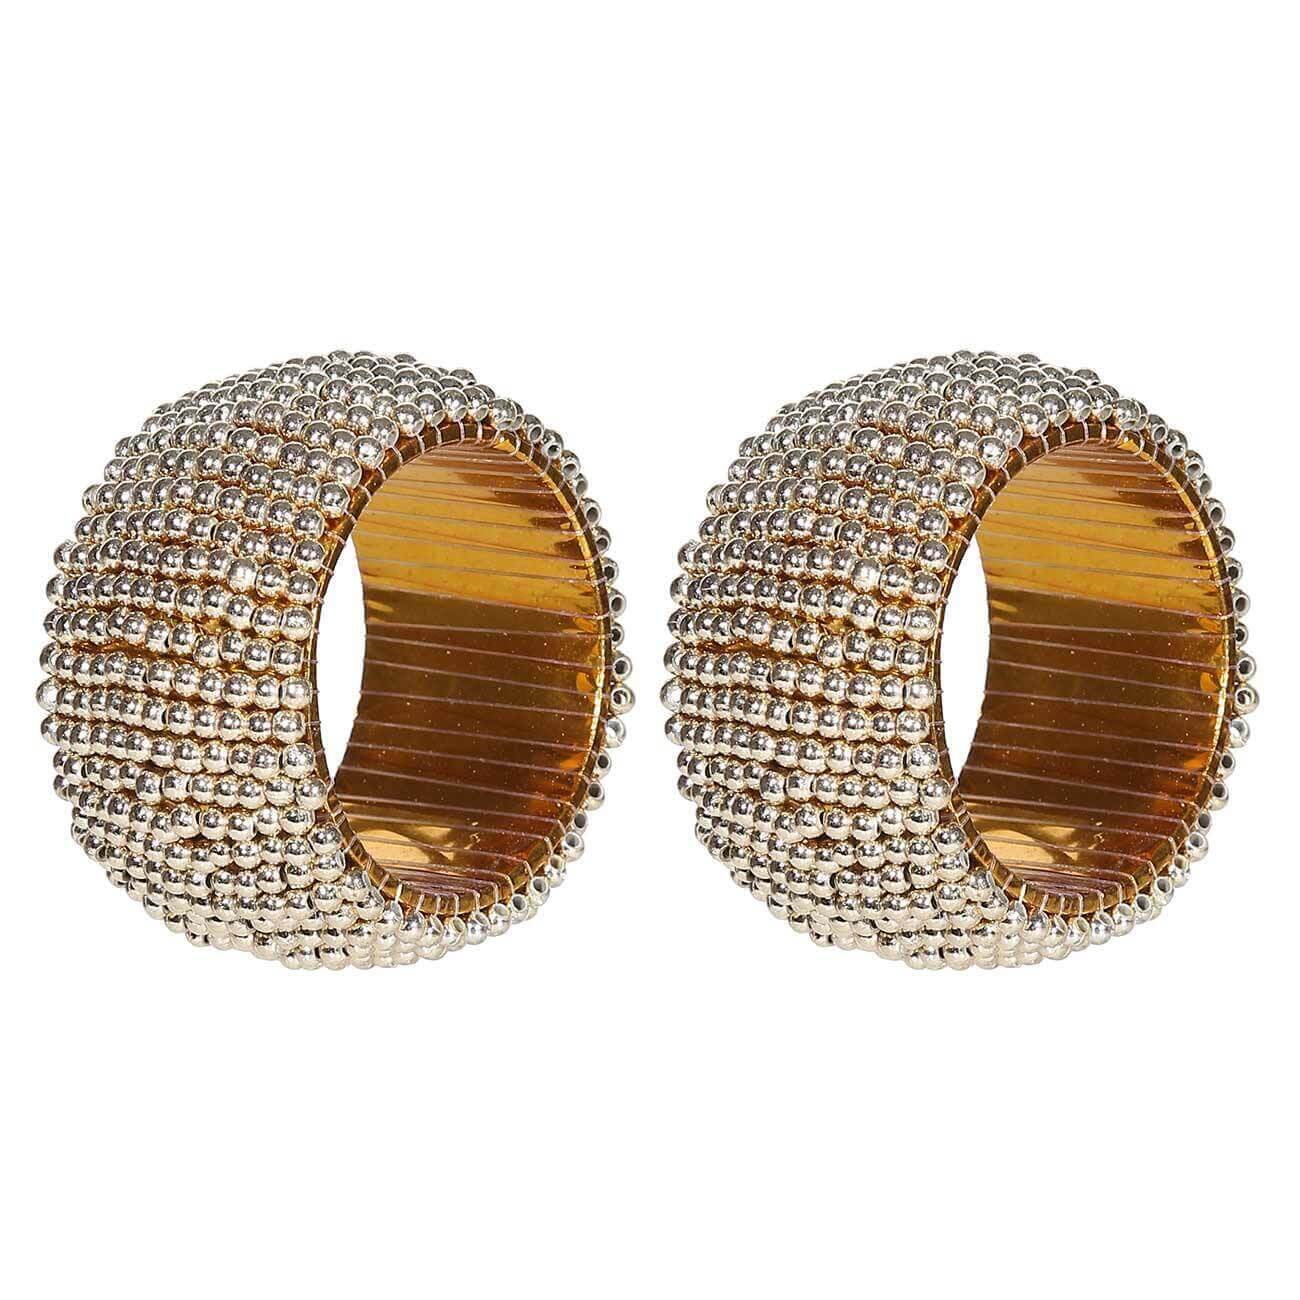 Кольцо для салфеток, 5 см, 2 шт, бисер, круглое, золотистое, Shiny beads кольцо для салфеток 5 см 2 шт бисер круглое белое shiny beads